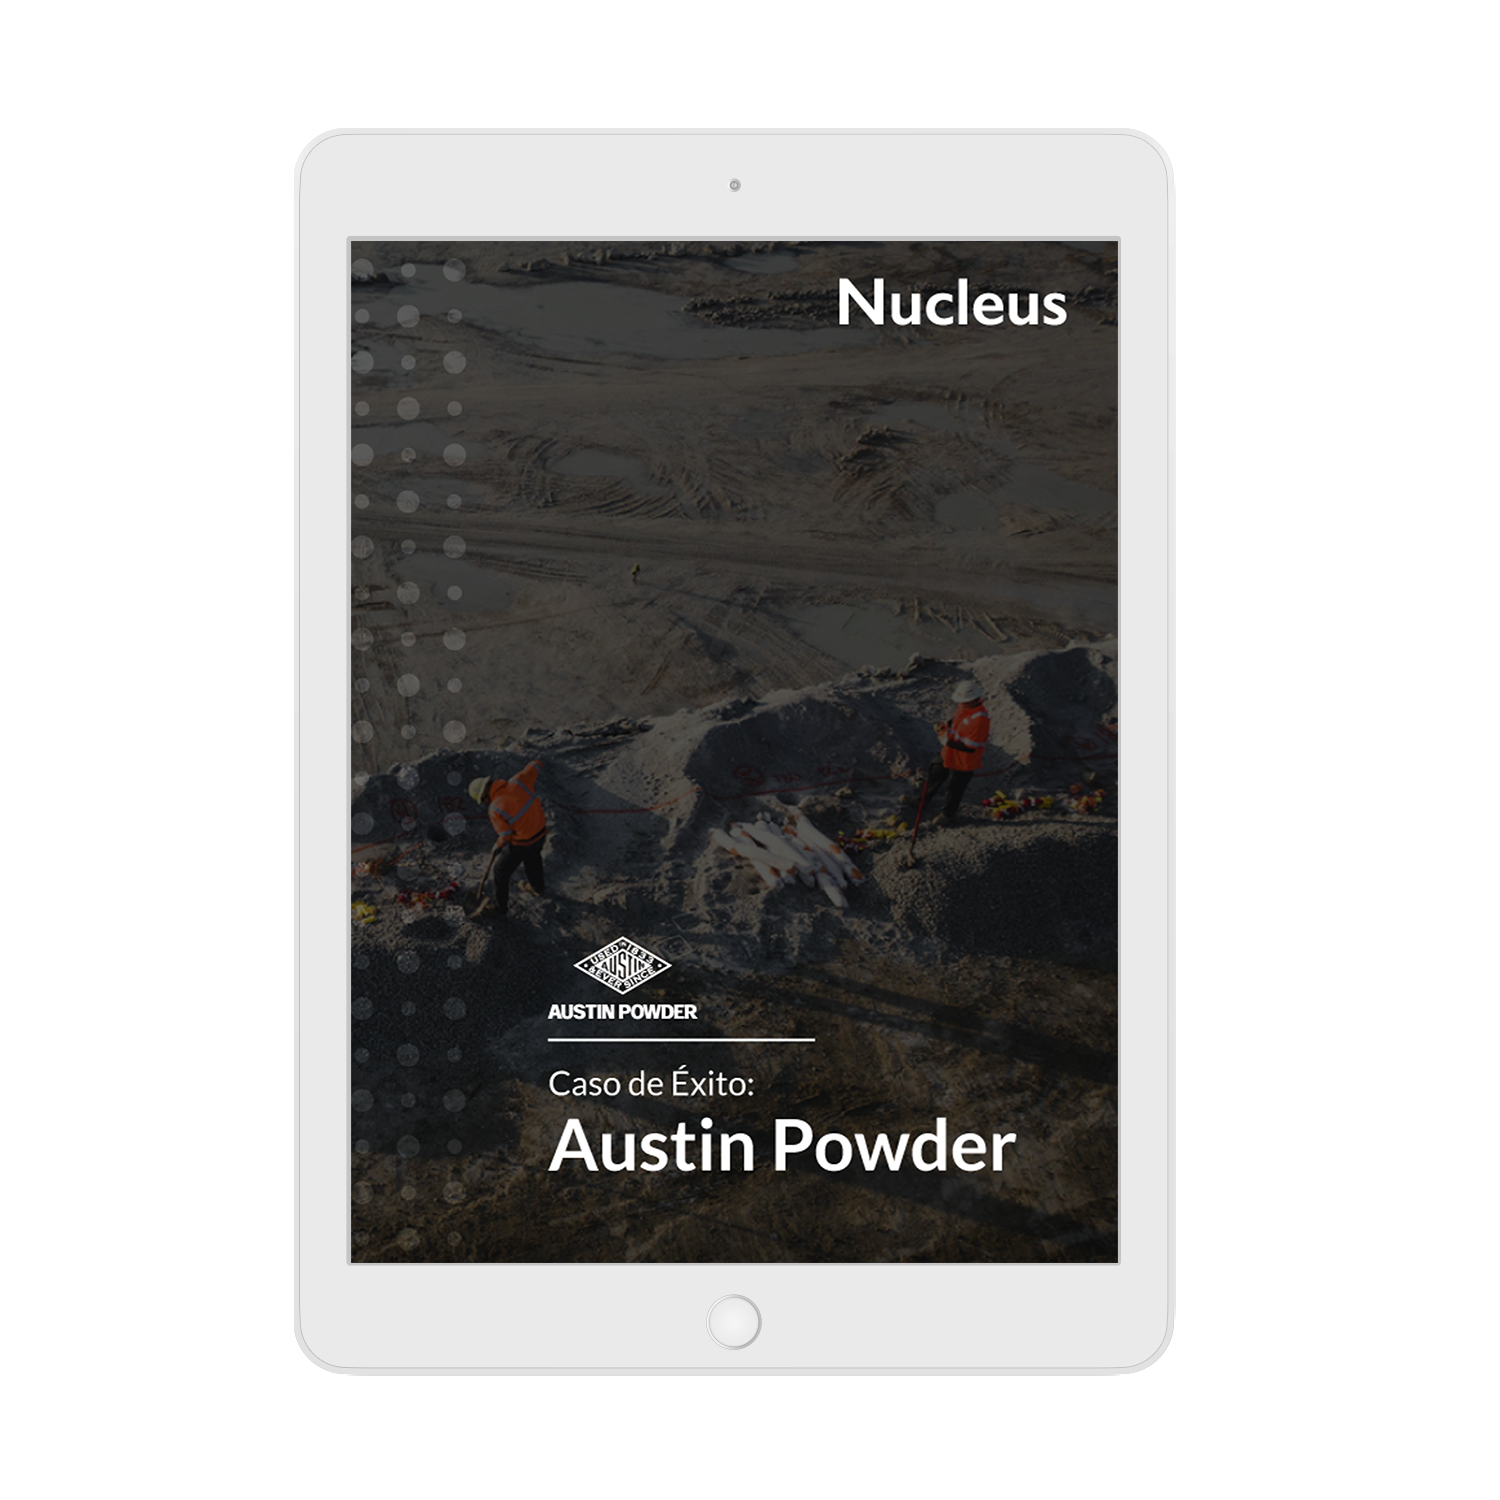 iPad con portada de caso de éxito de Austin Powder y Nucleus